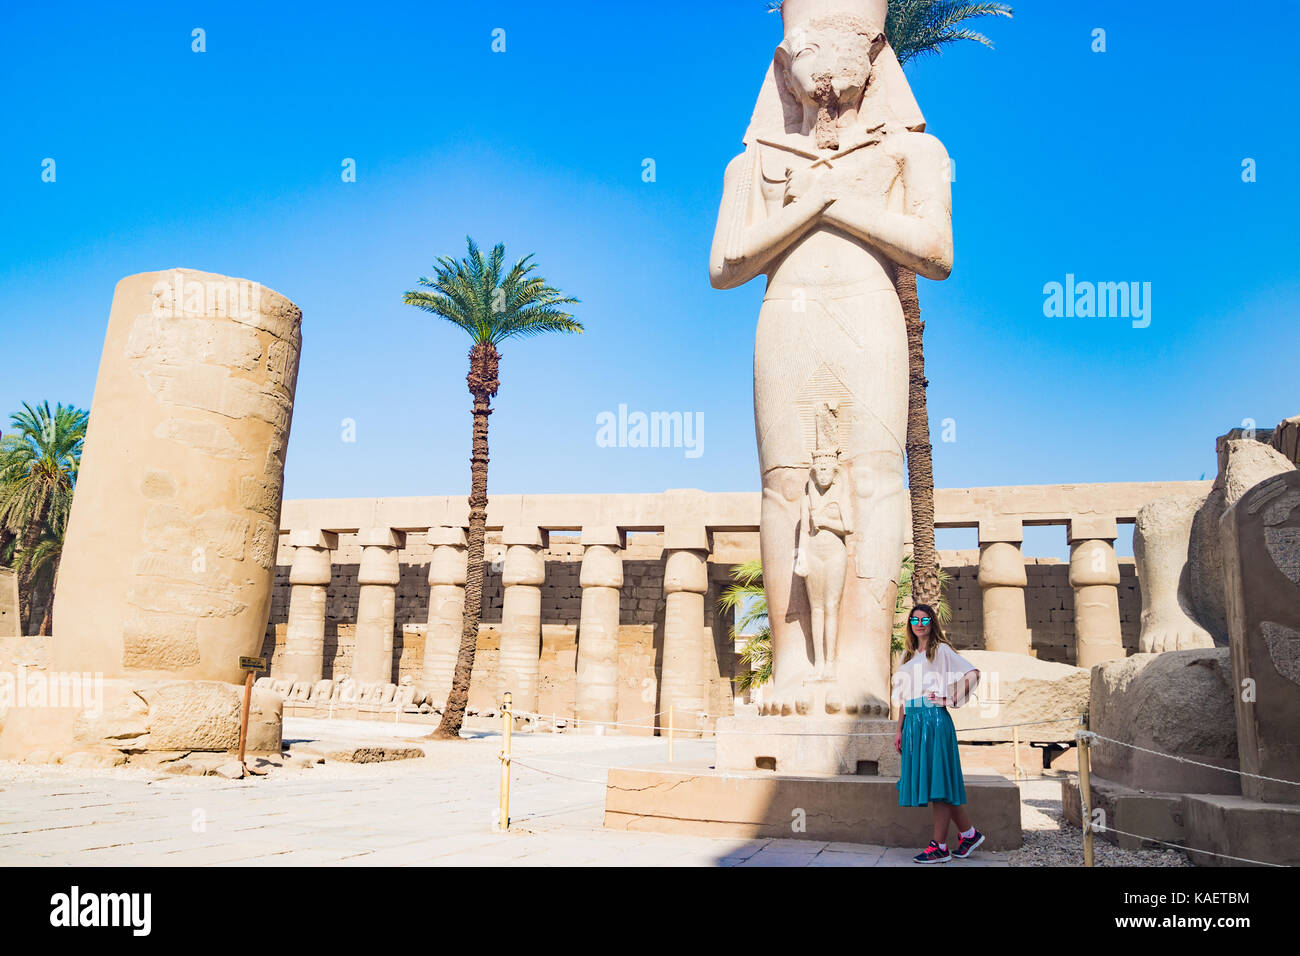 Near the Statue of Karnak in Luxor Egypt Stock Photo